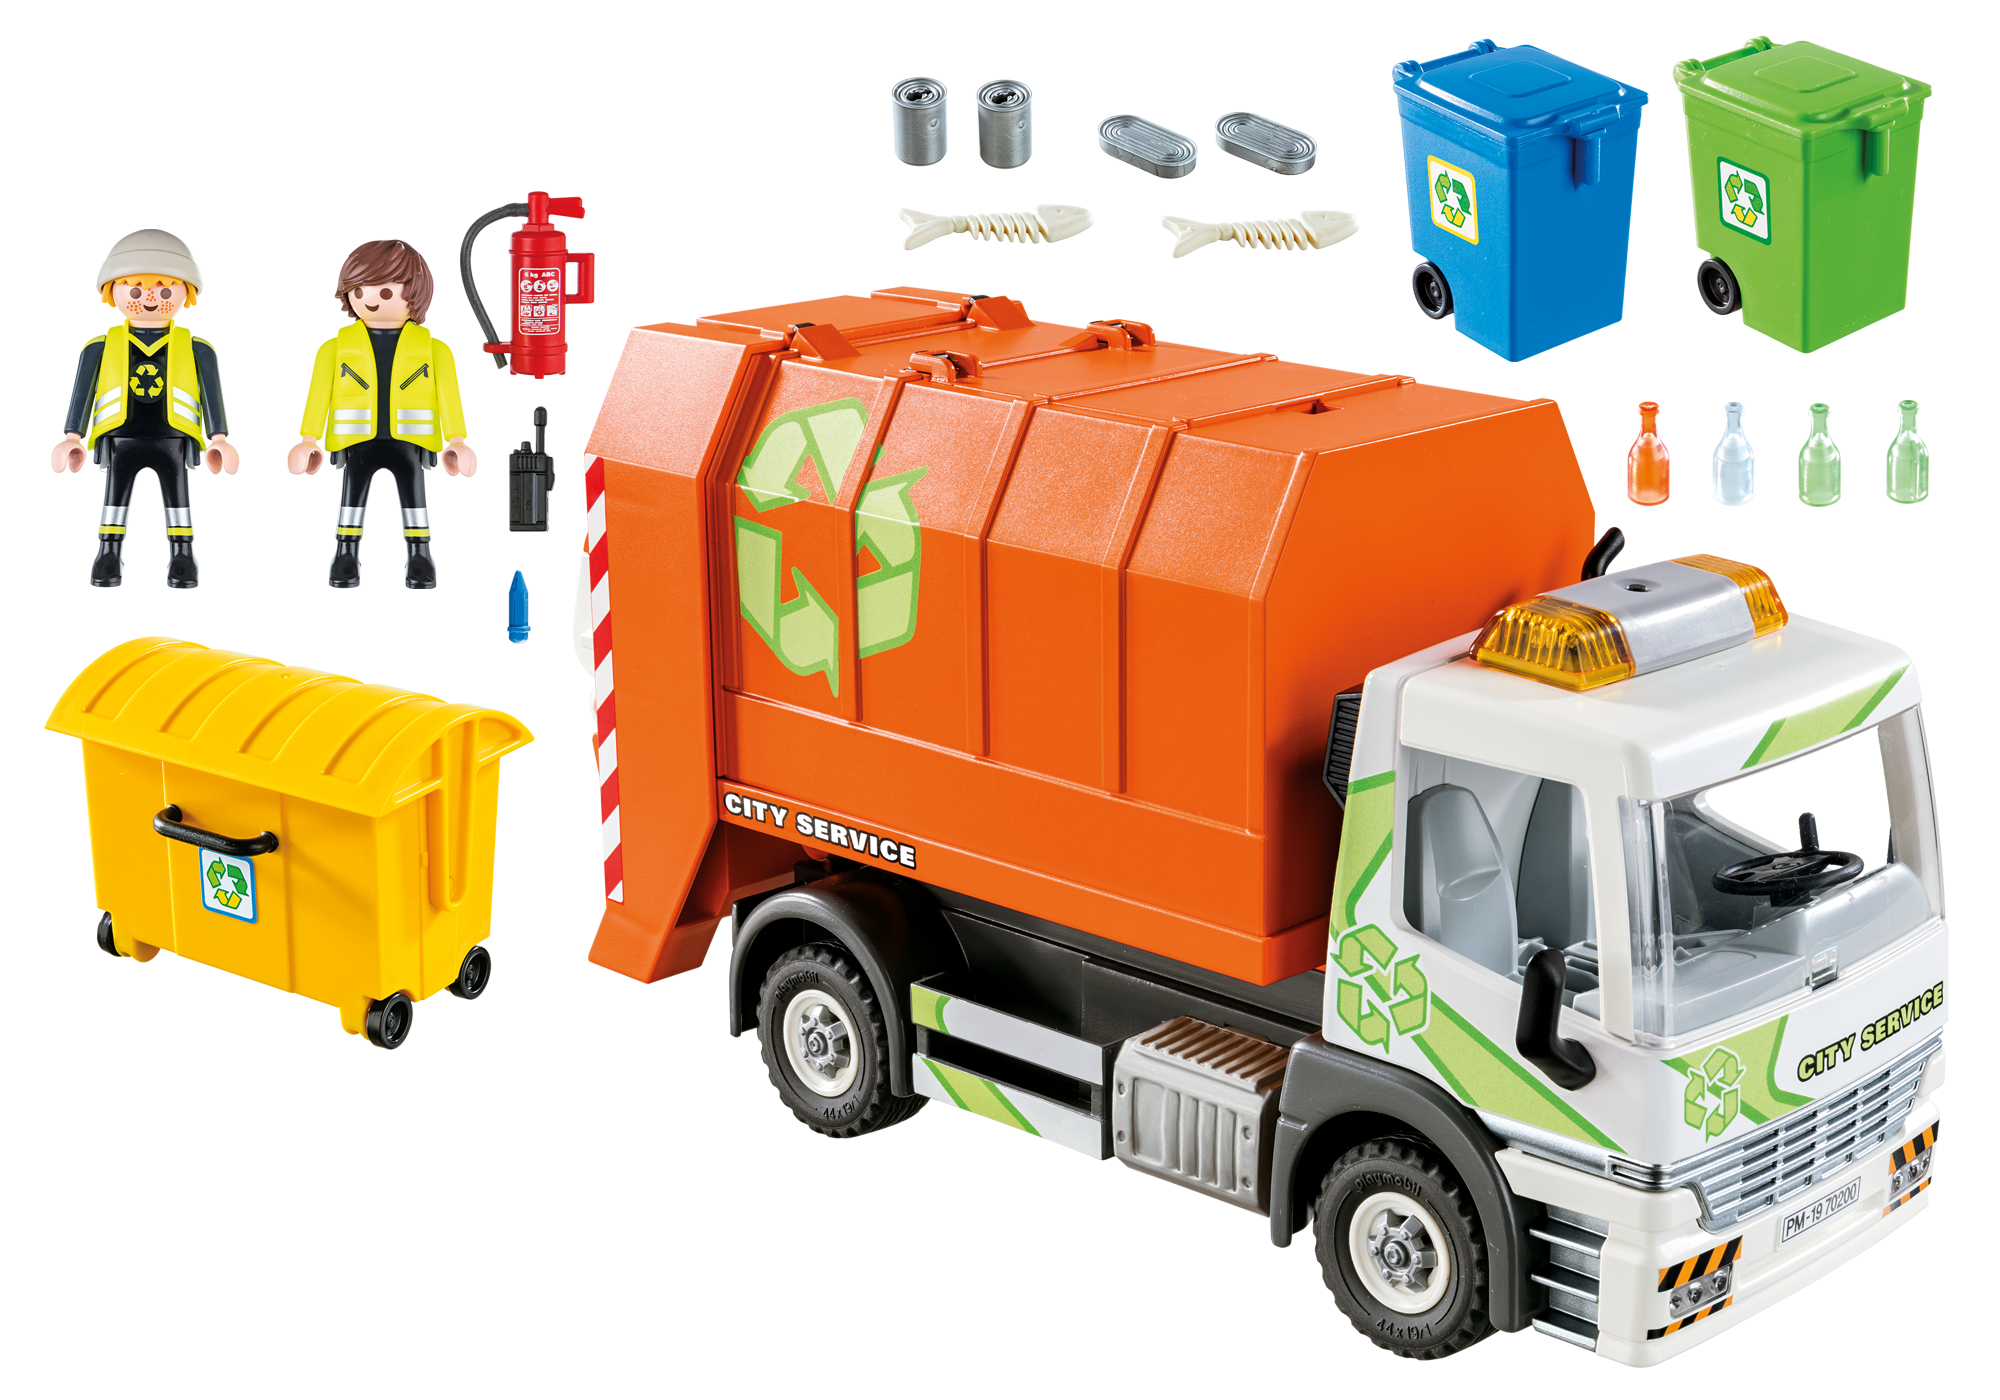 camion de poubelle playmobil